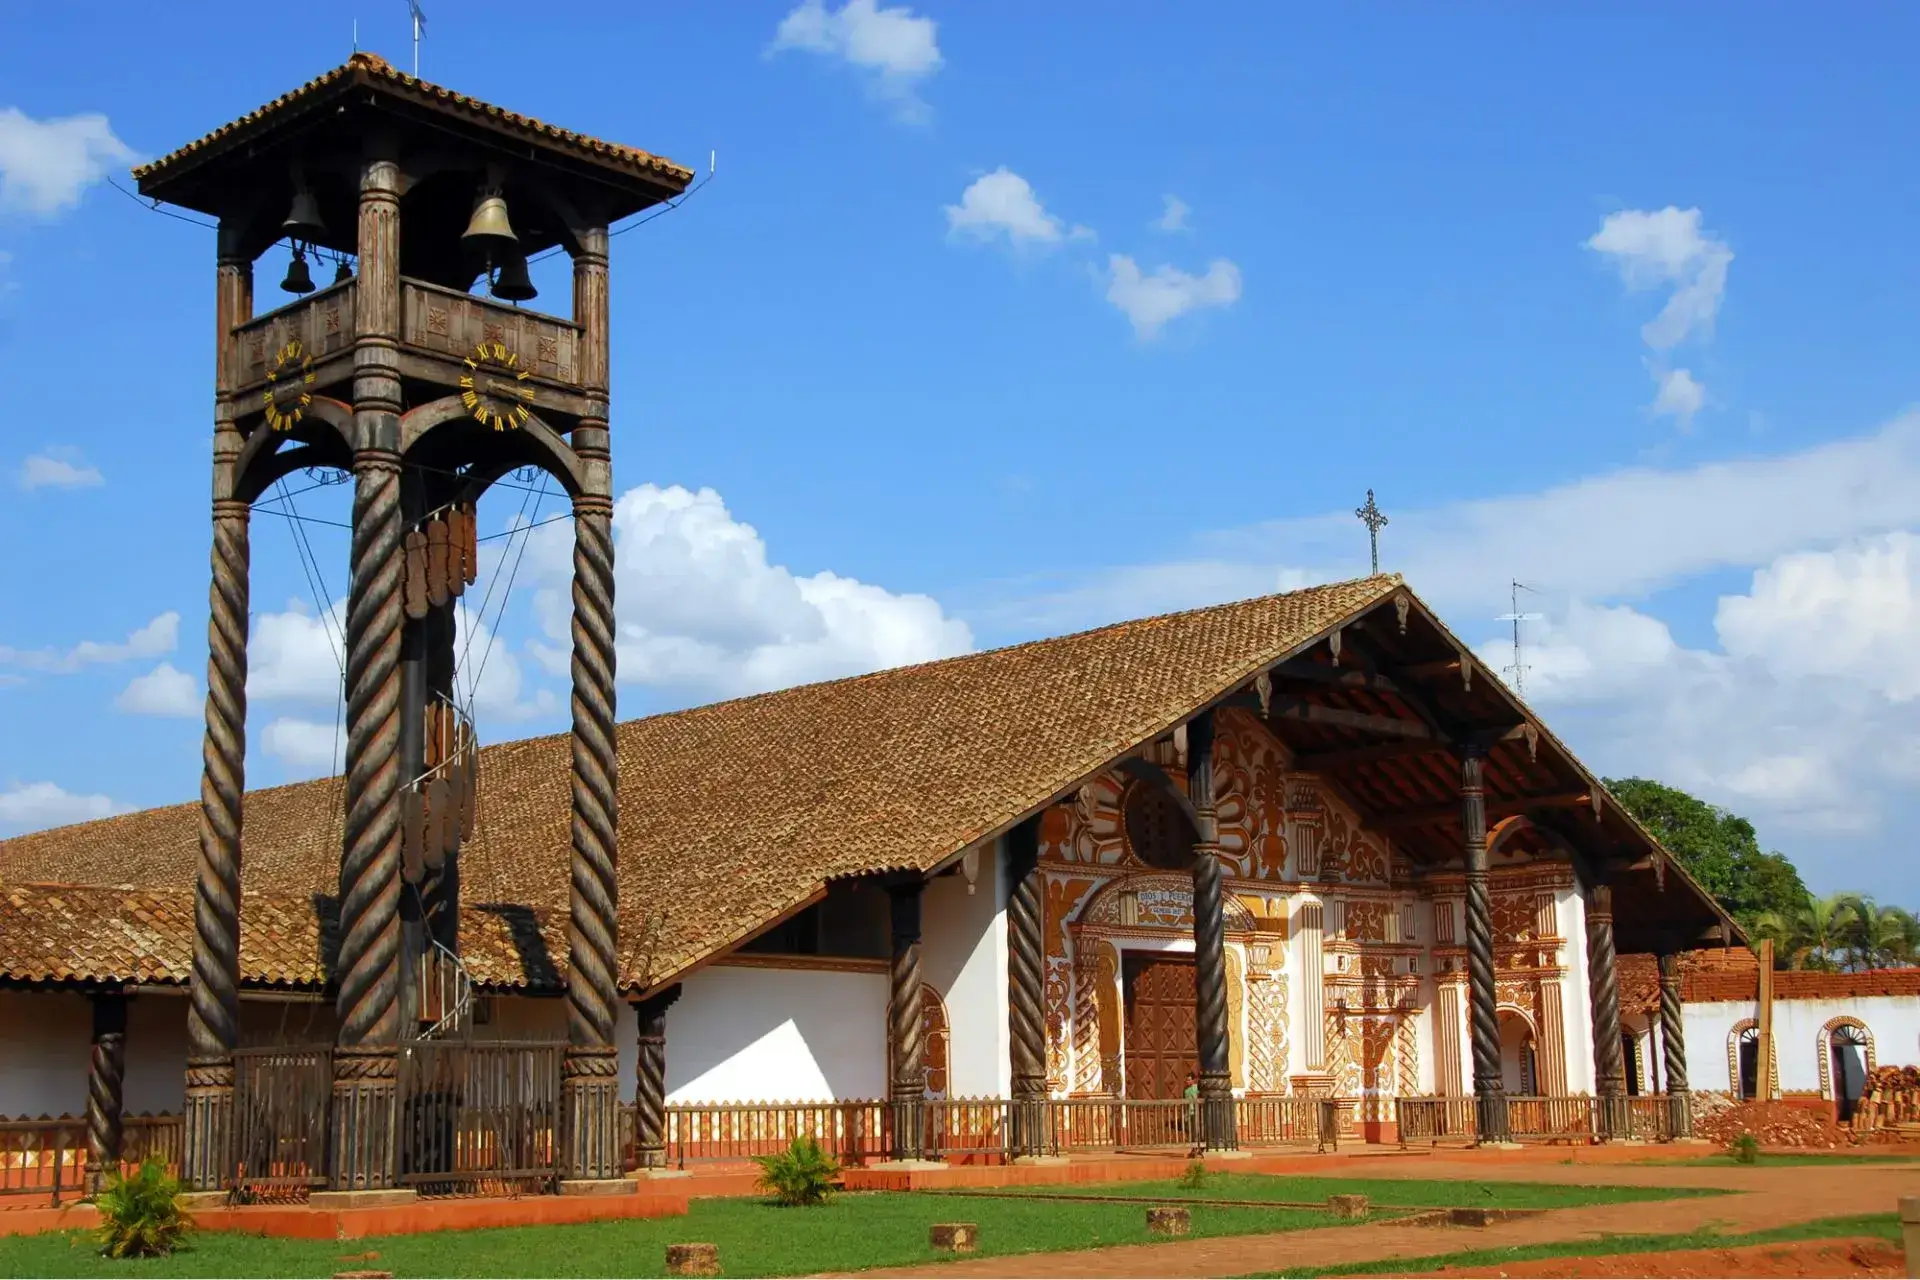 Edificio de una iglesia con tejado a dos aguas, y fachada blanca. Campanario de madera situado a la izquierda